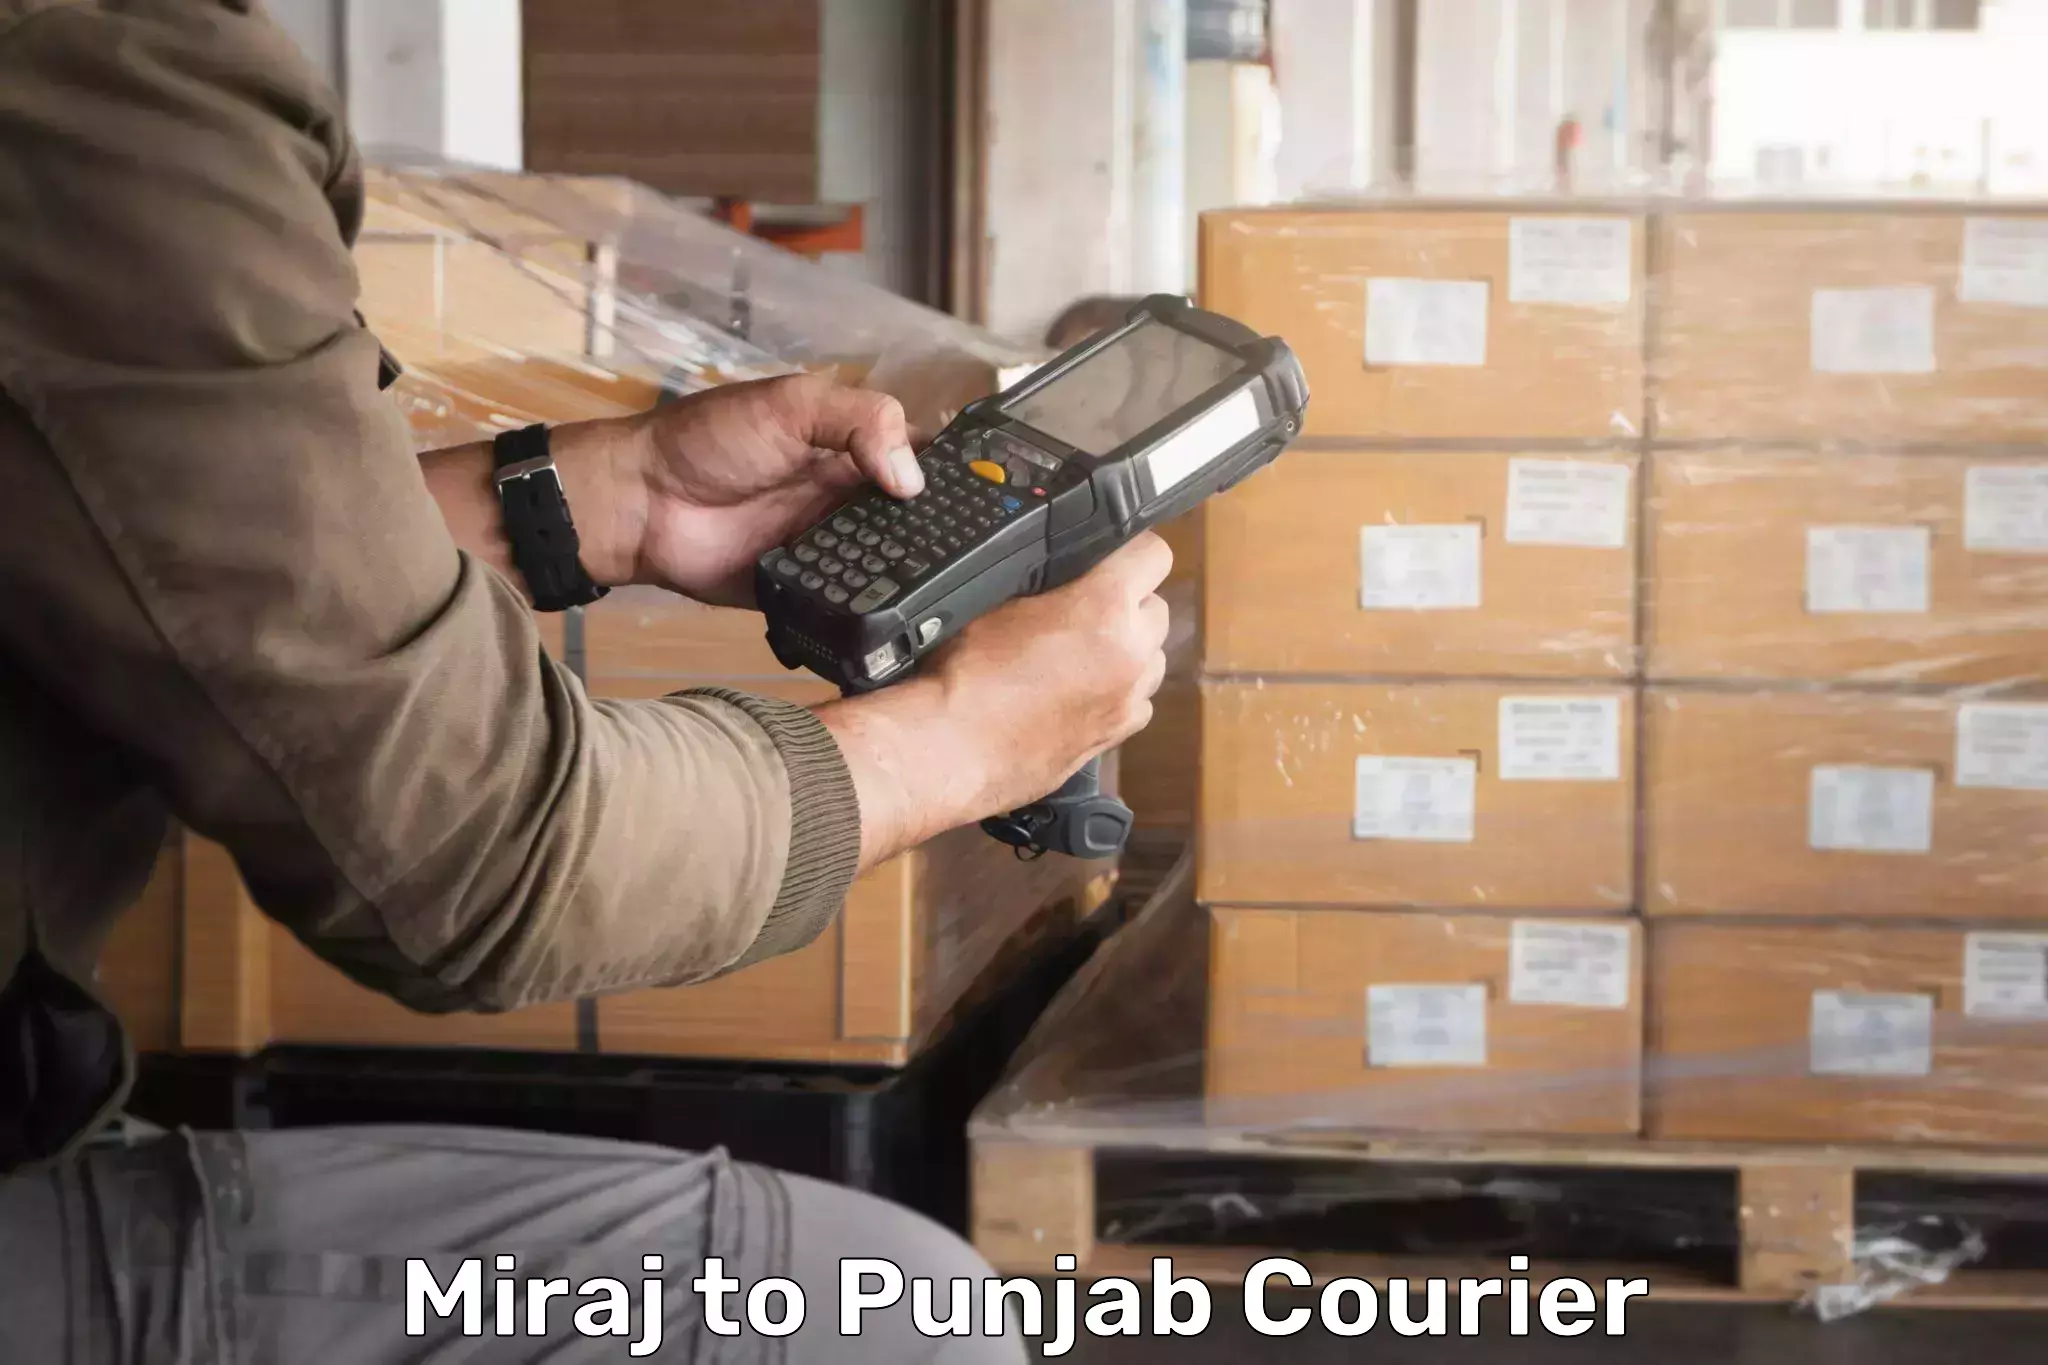 Tracking updates in Miraj to Punjab